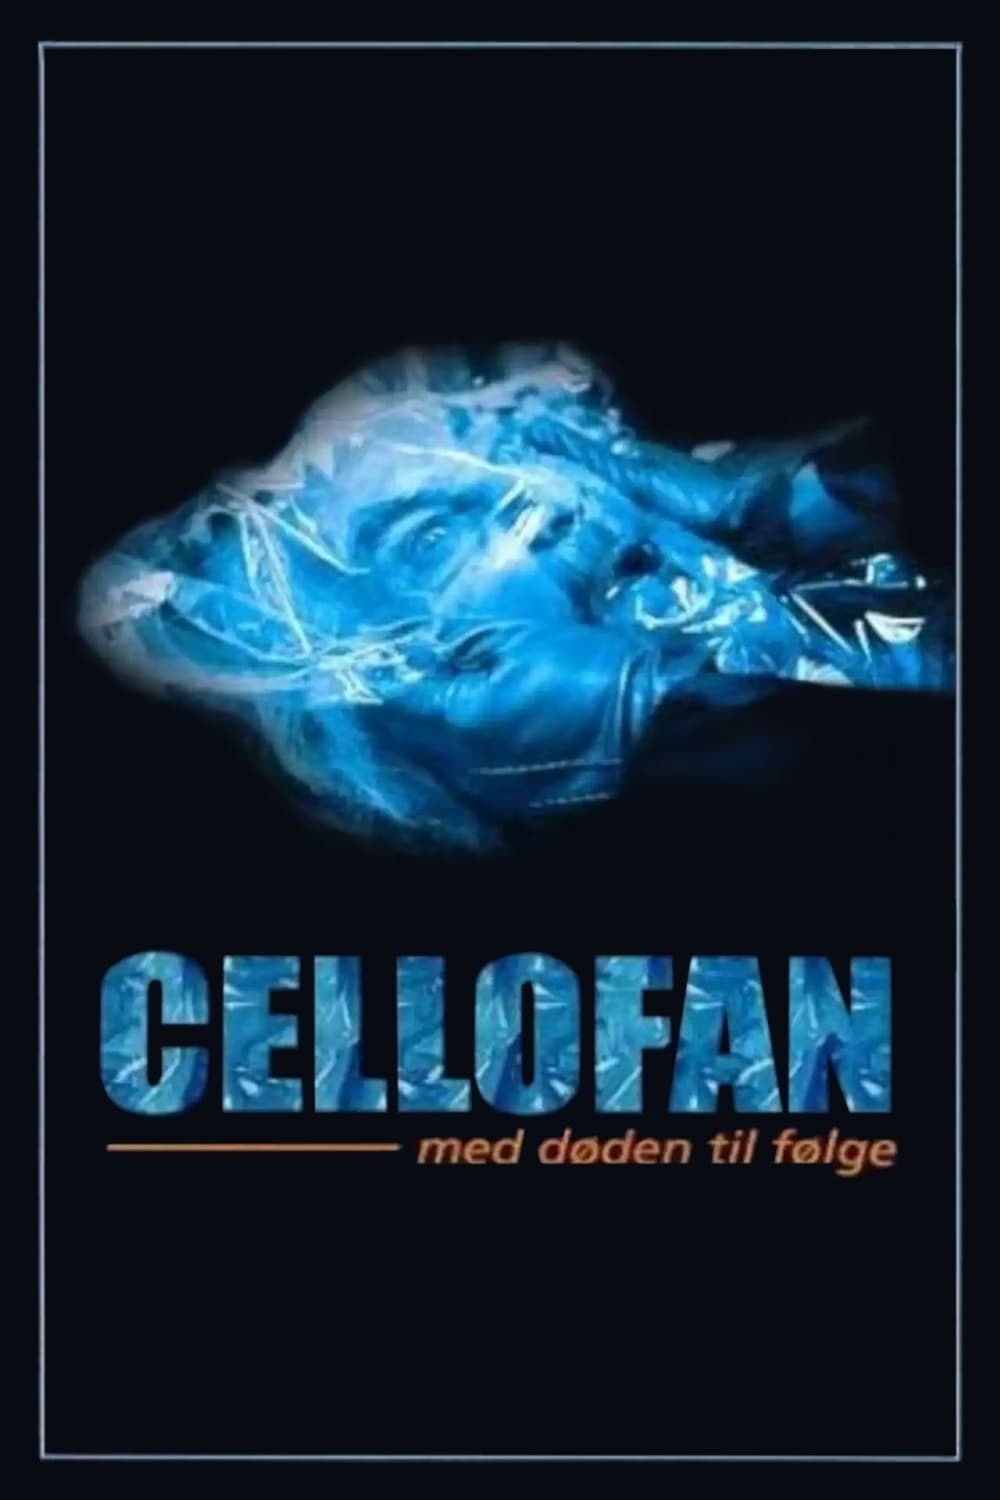 Cellophane (1998)